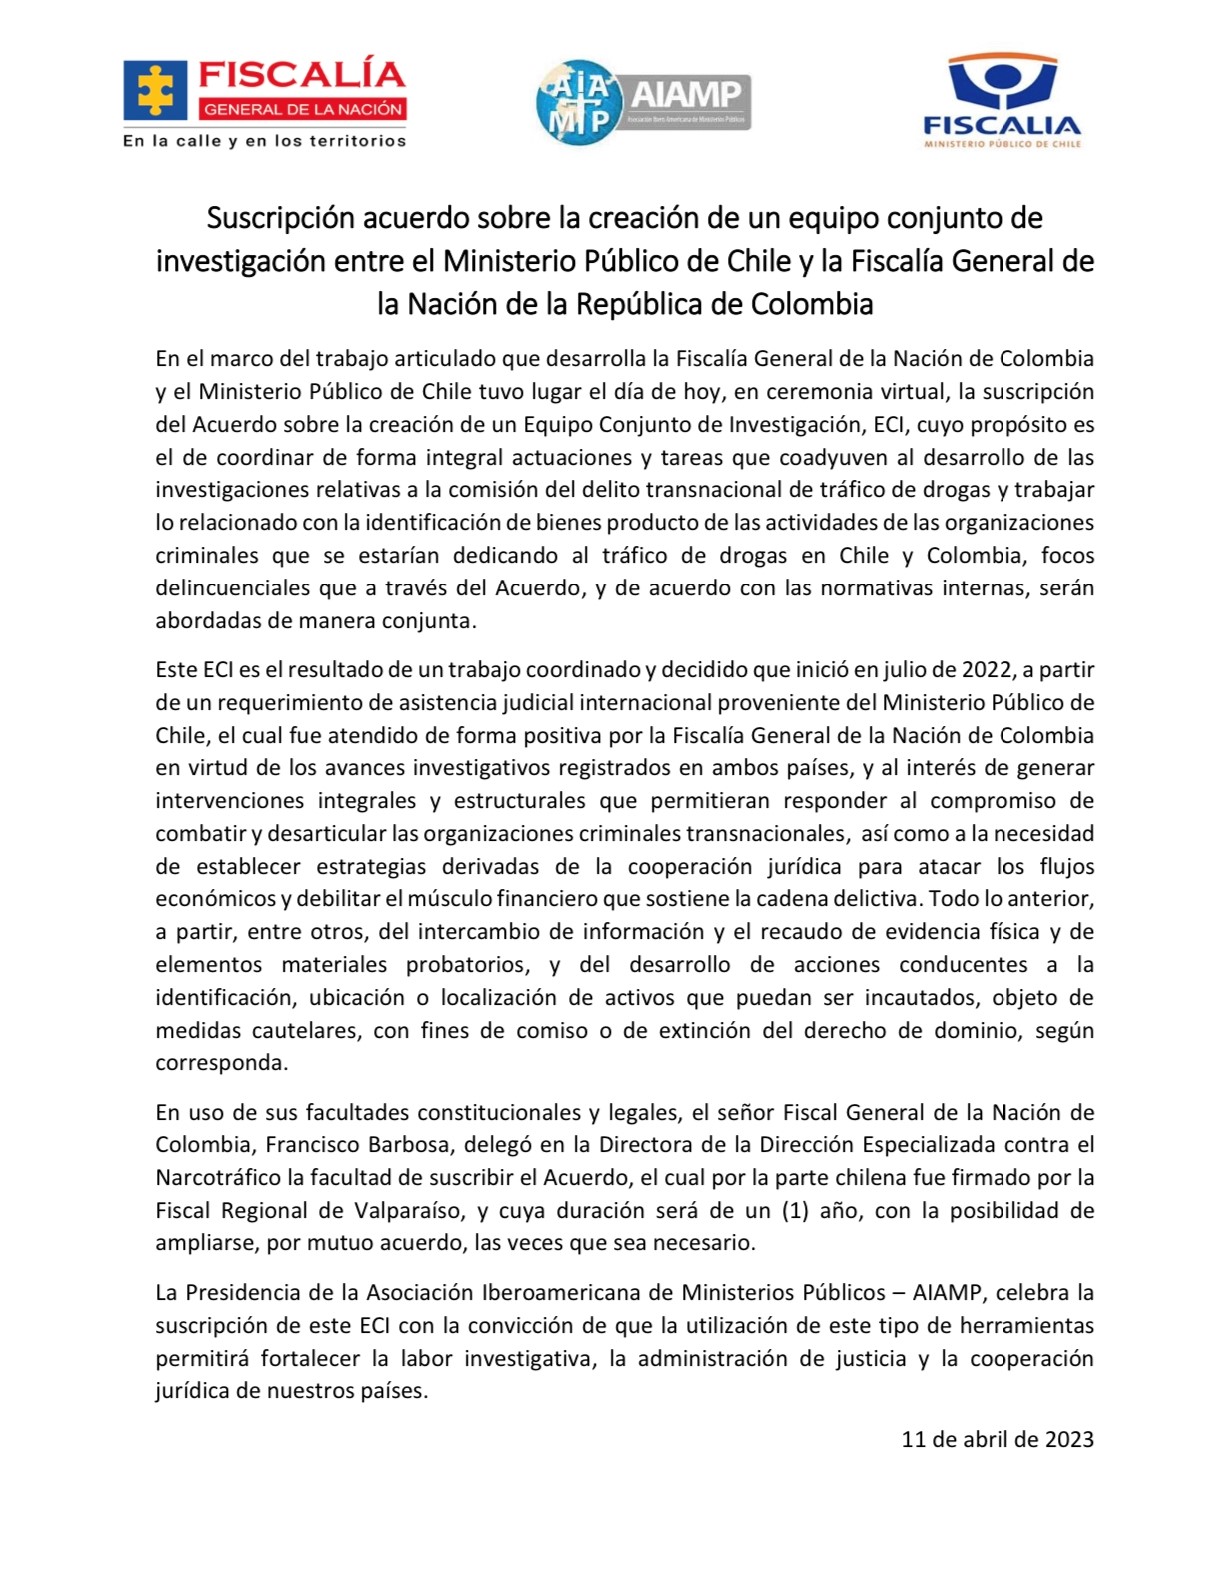 Suscripción acuerdo sobre la creación de un equipo conjunto de investigación entre el Ministerio Público de Chile y la Fiscalía General de la Nación de la República de Colombia